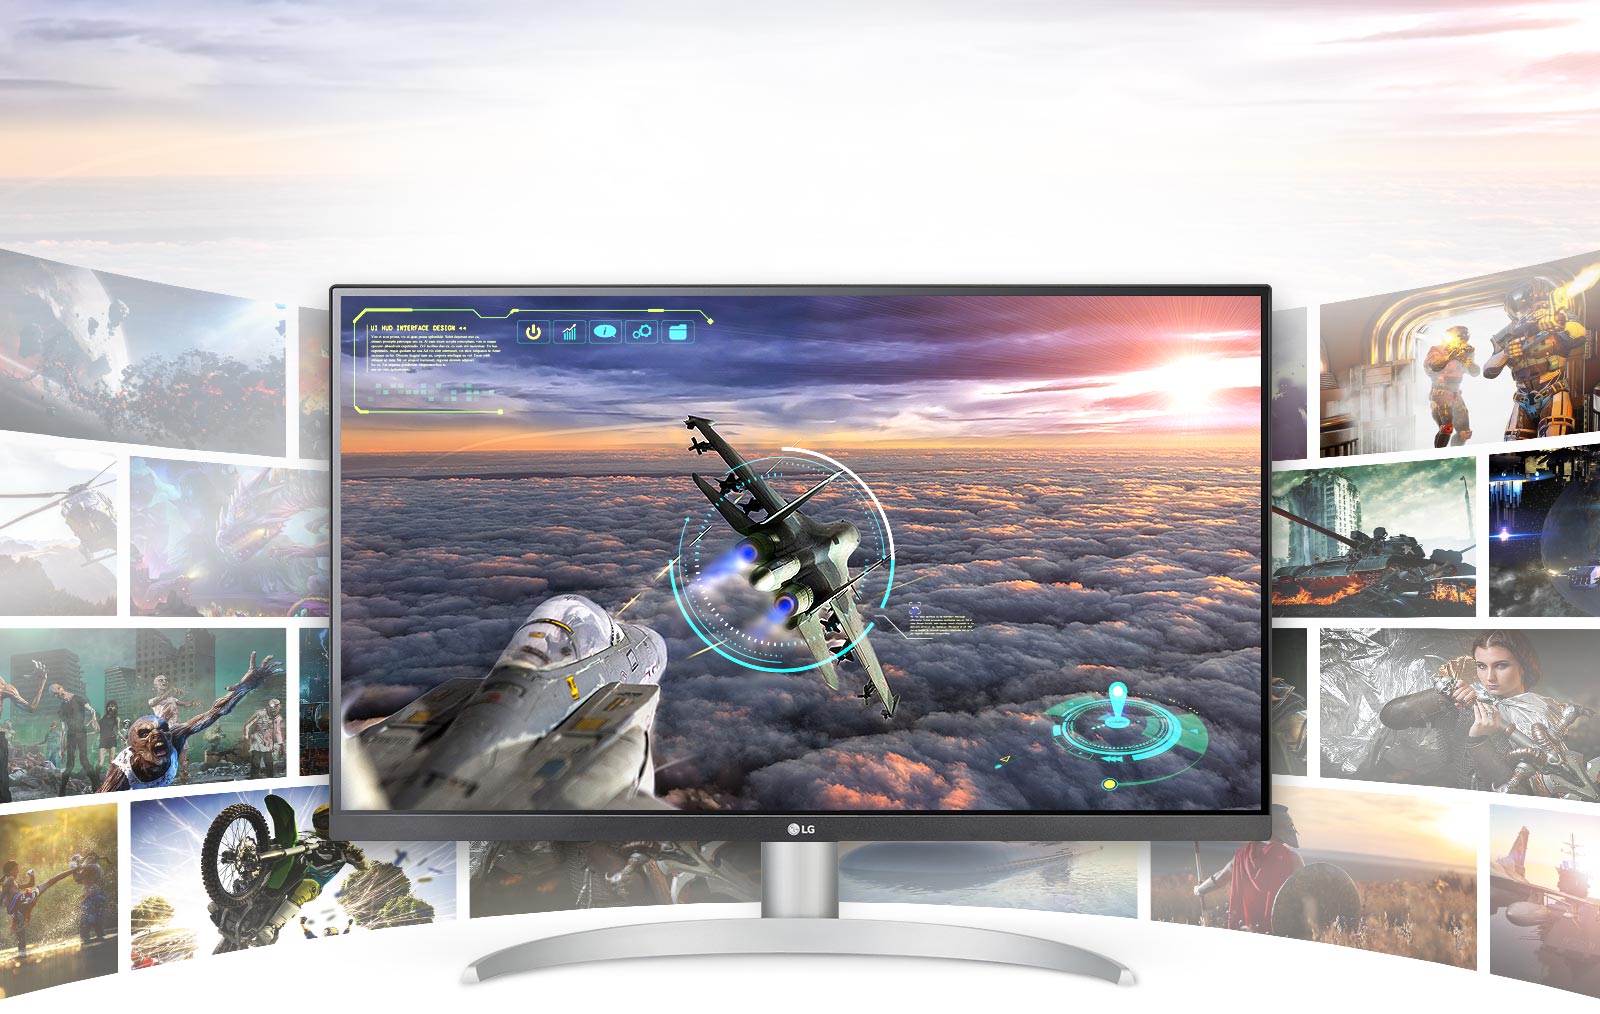 Σκηνή παιχνιδιού σε οθόνη LG UHD 4K με εξαιρετική ευκρίνεια και λεπτομέρεια